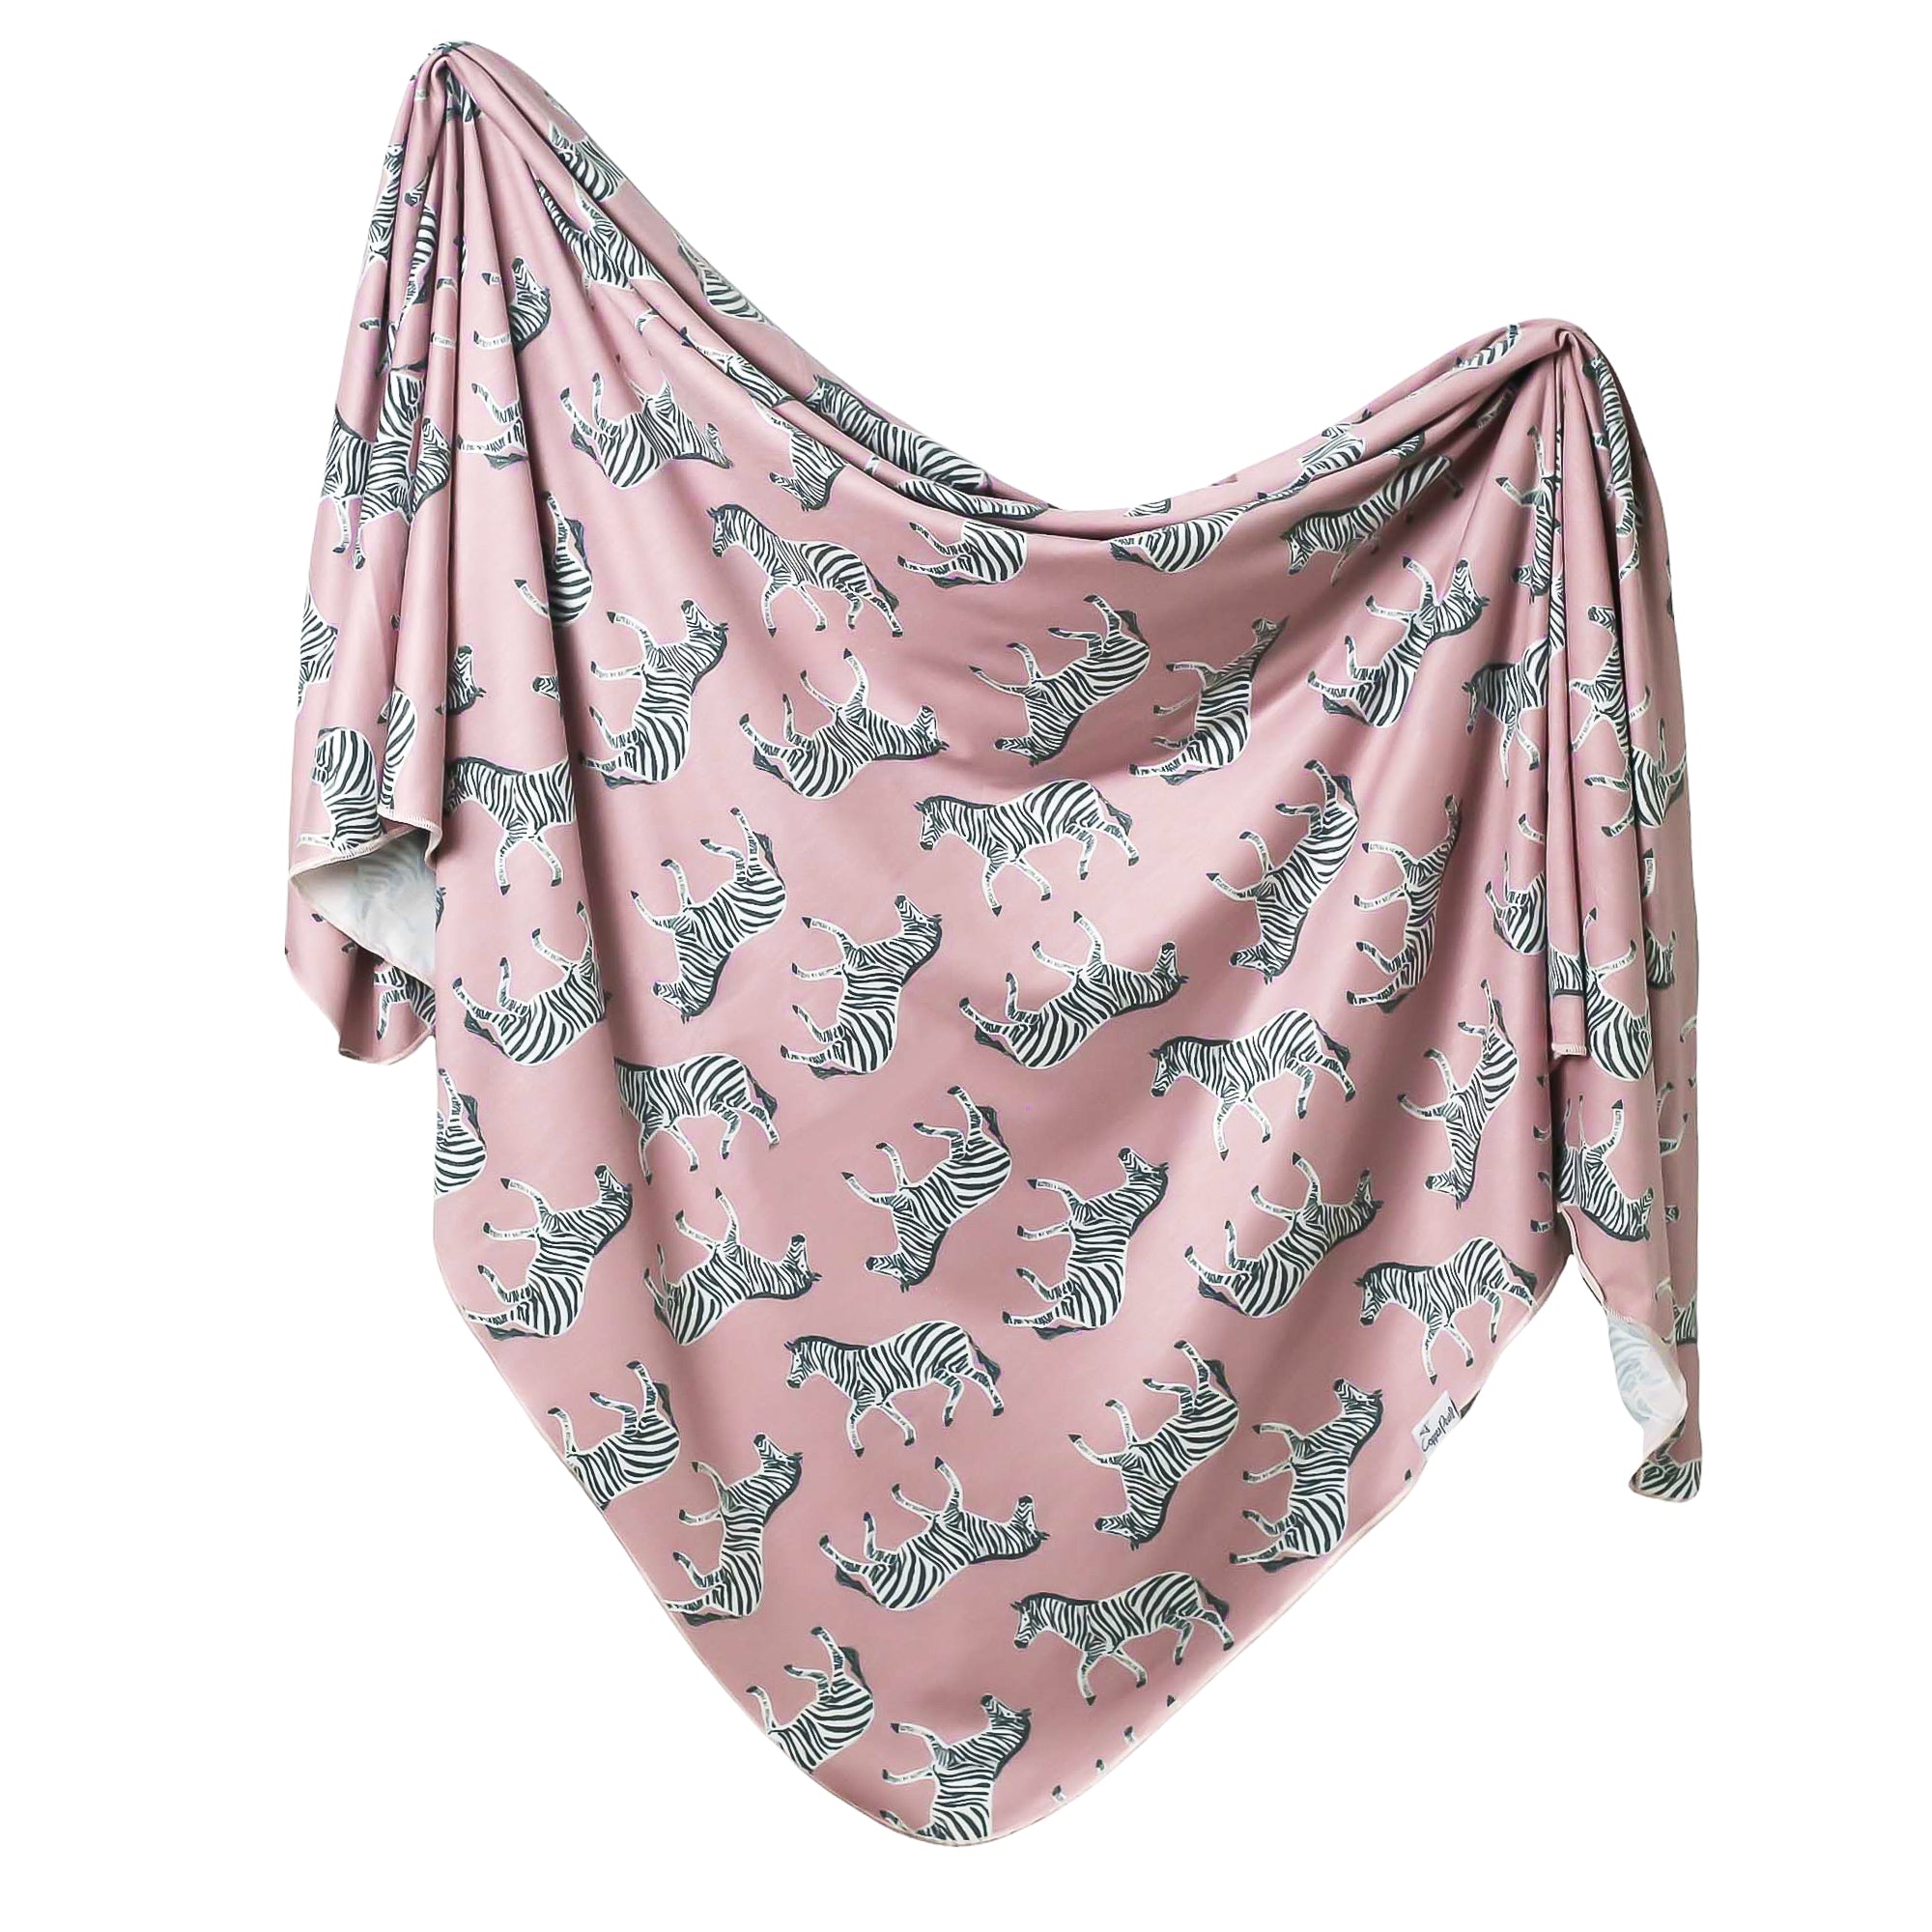 Zella Knit Swaddle Blanket - Twinkle Twinkle Little One